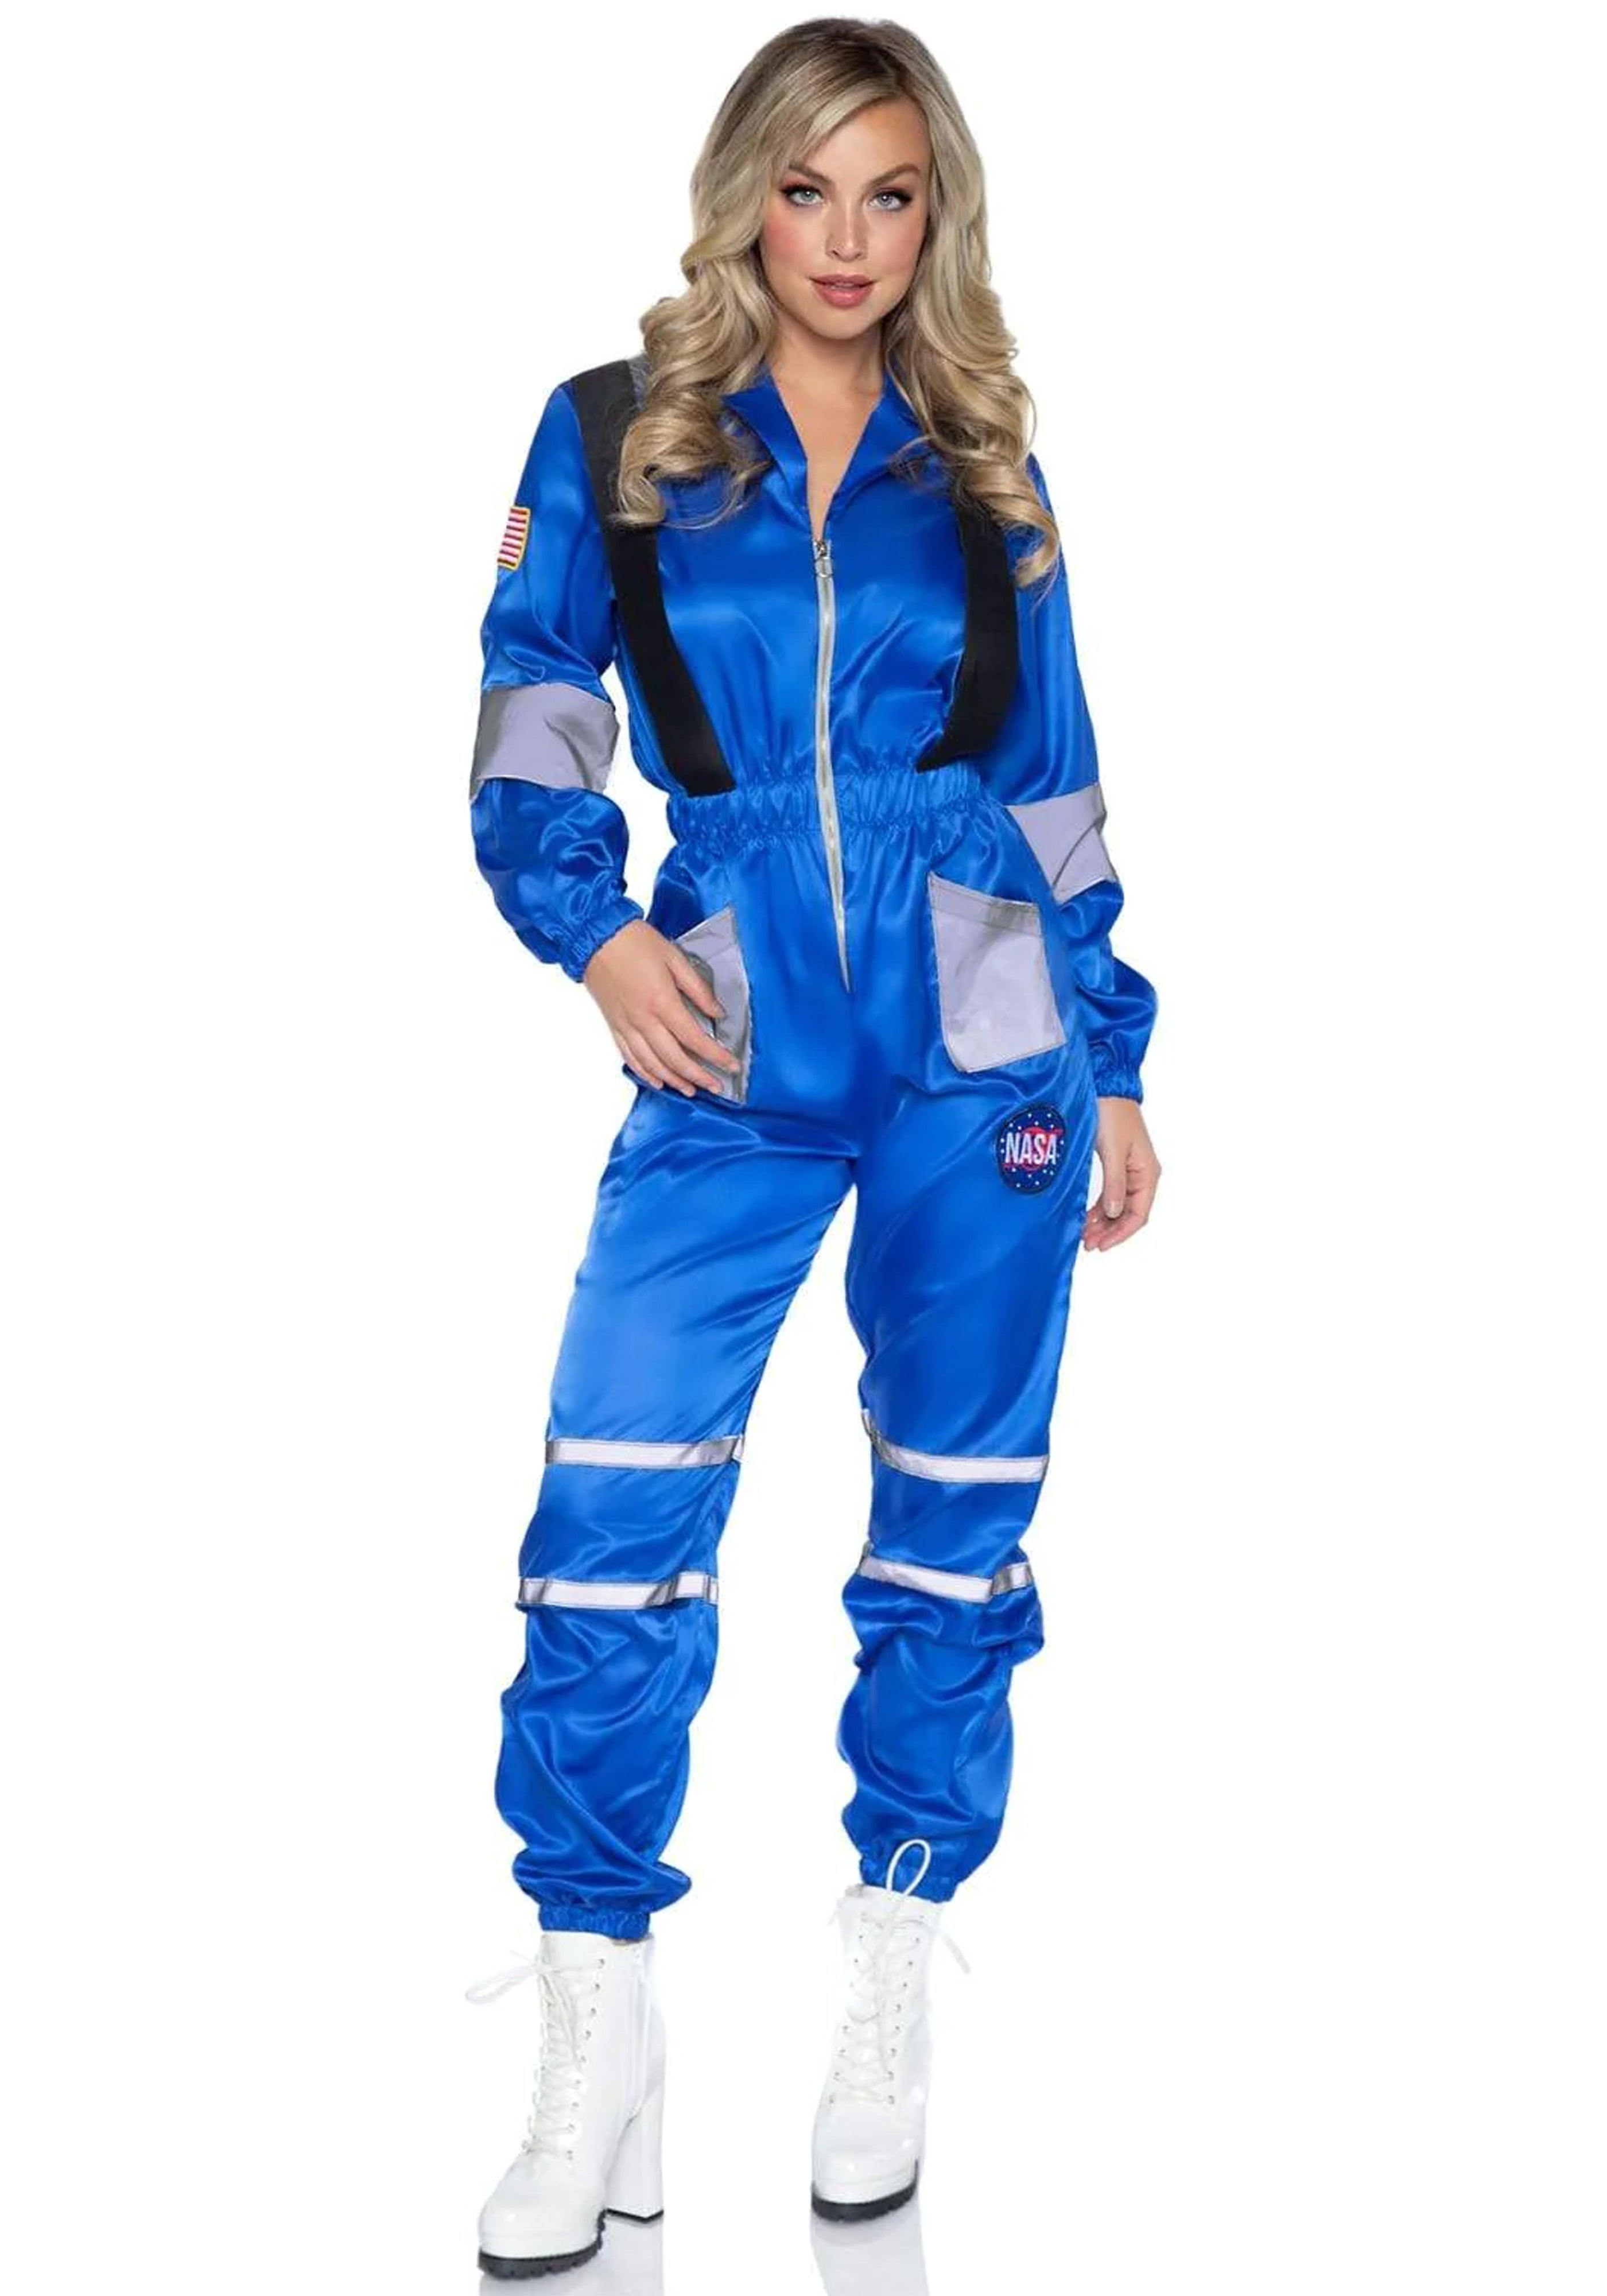 Space Explorer Spacesuit Costume